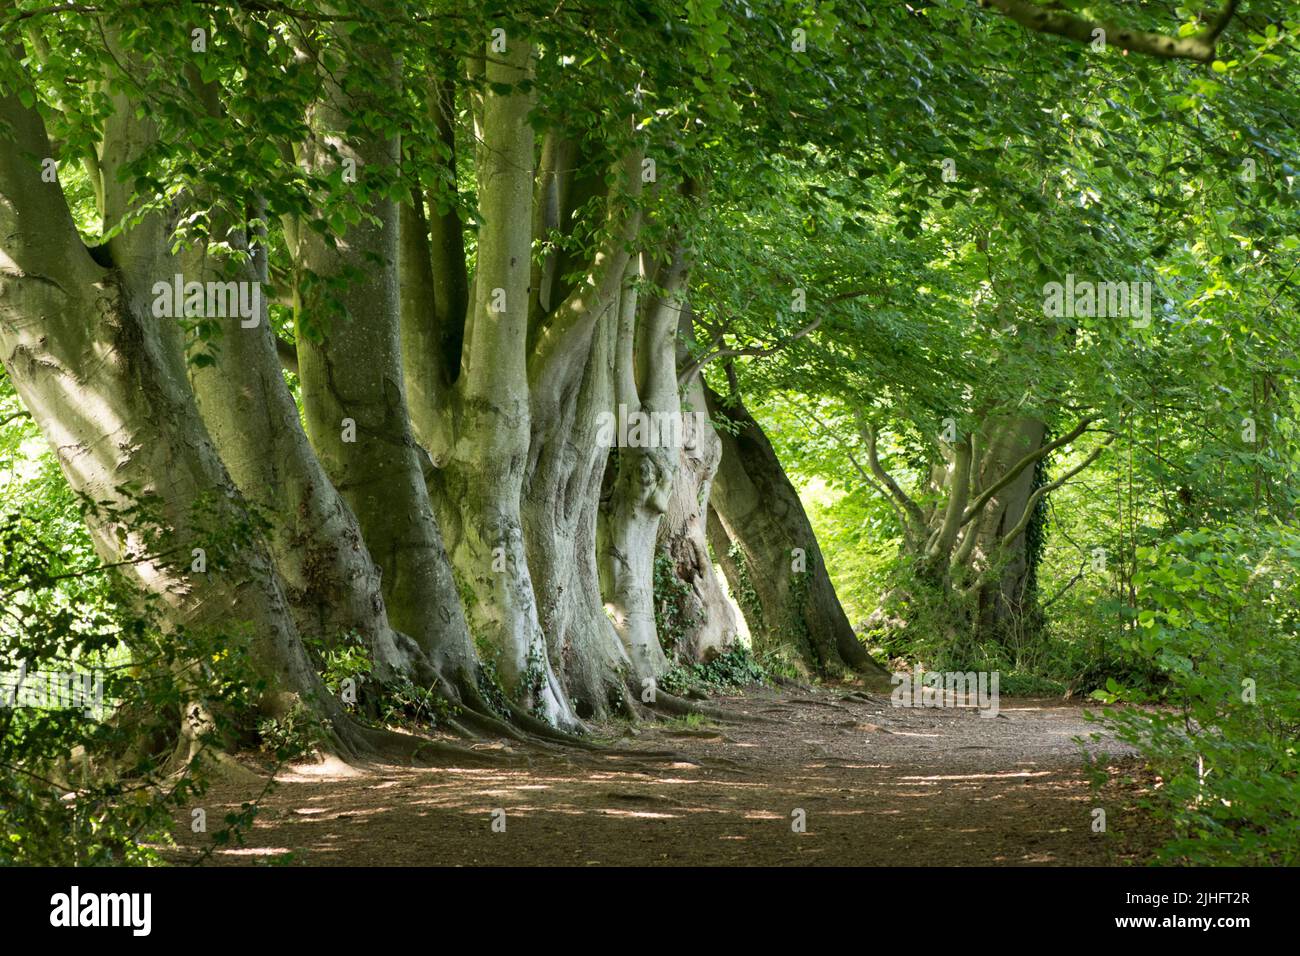 Hilera de haya común, Fagus sylvatica, troncos de árboles en una hilera, Norfolk, Junio Foto de stock